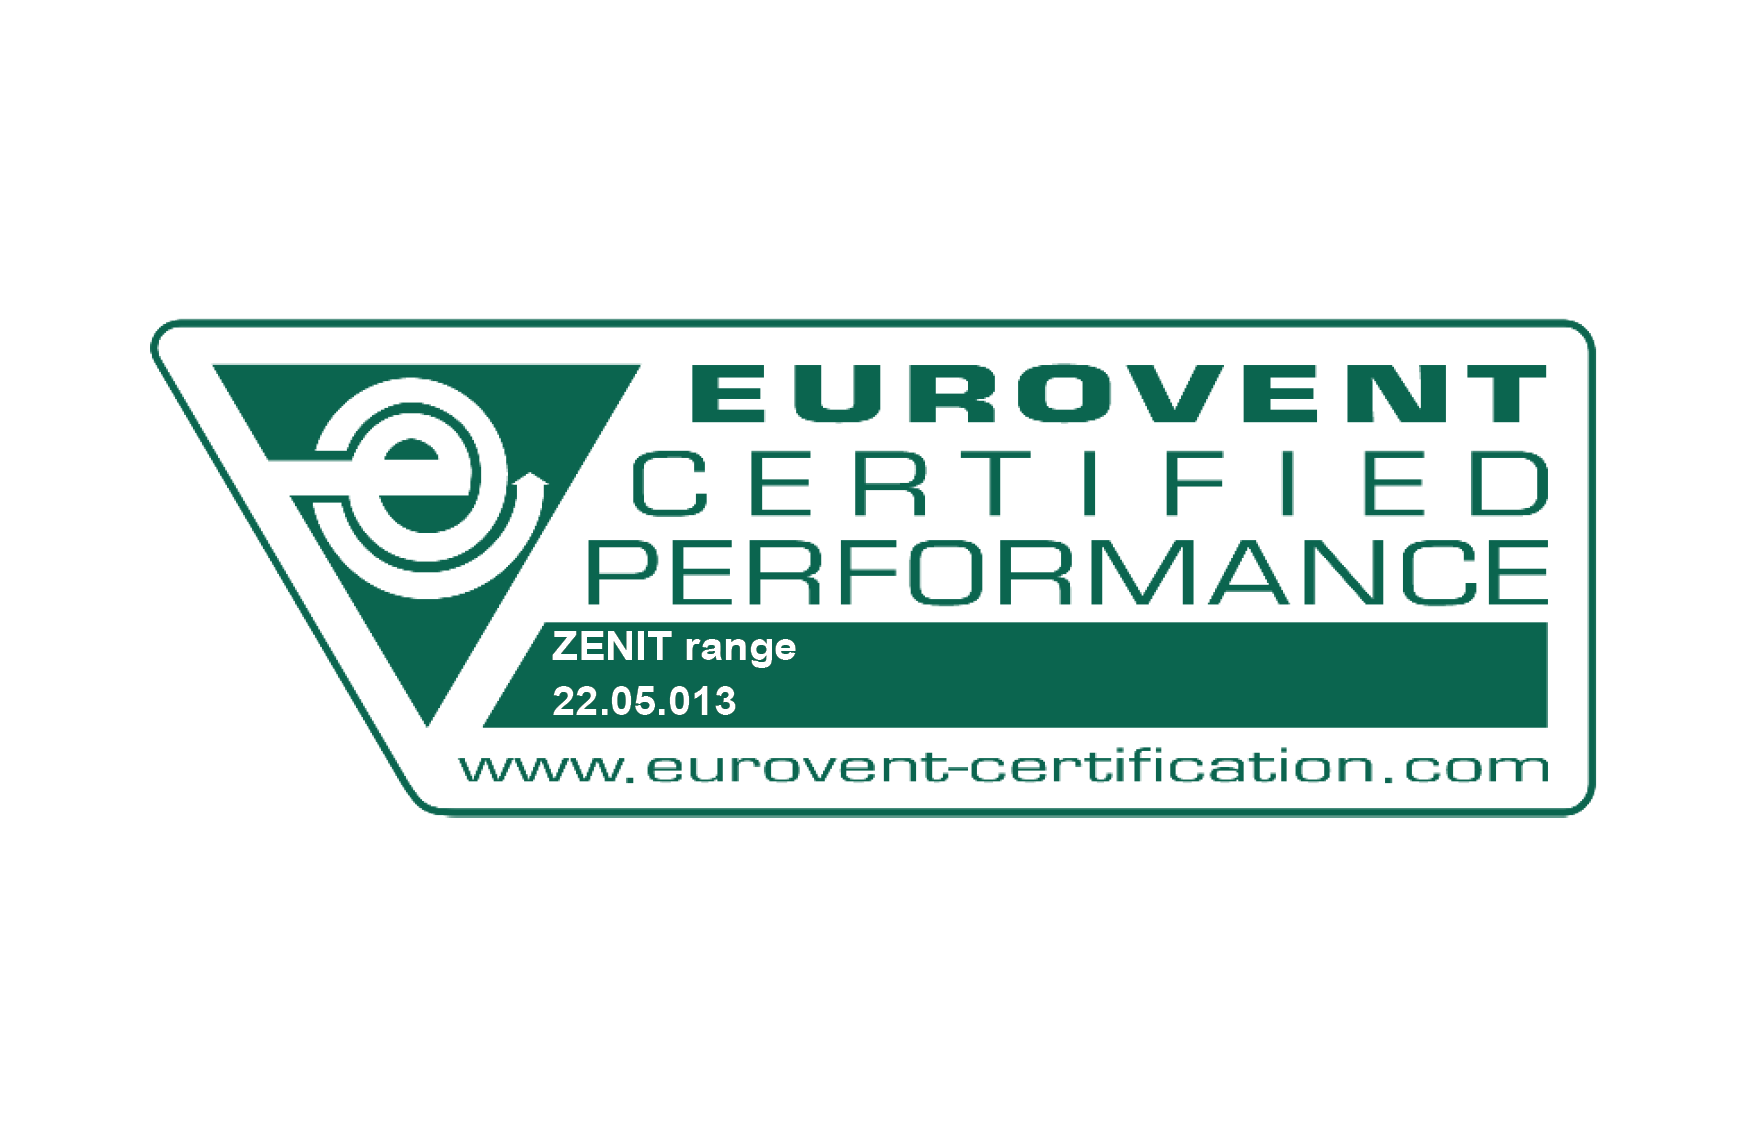 JACIR ZENIT Eurovent certification